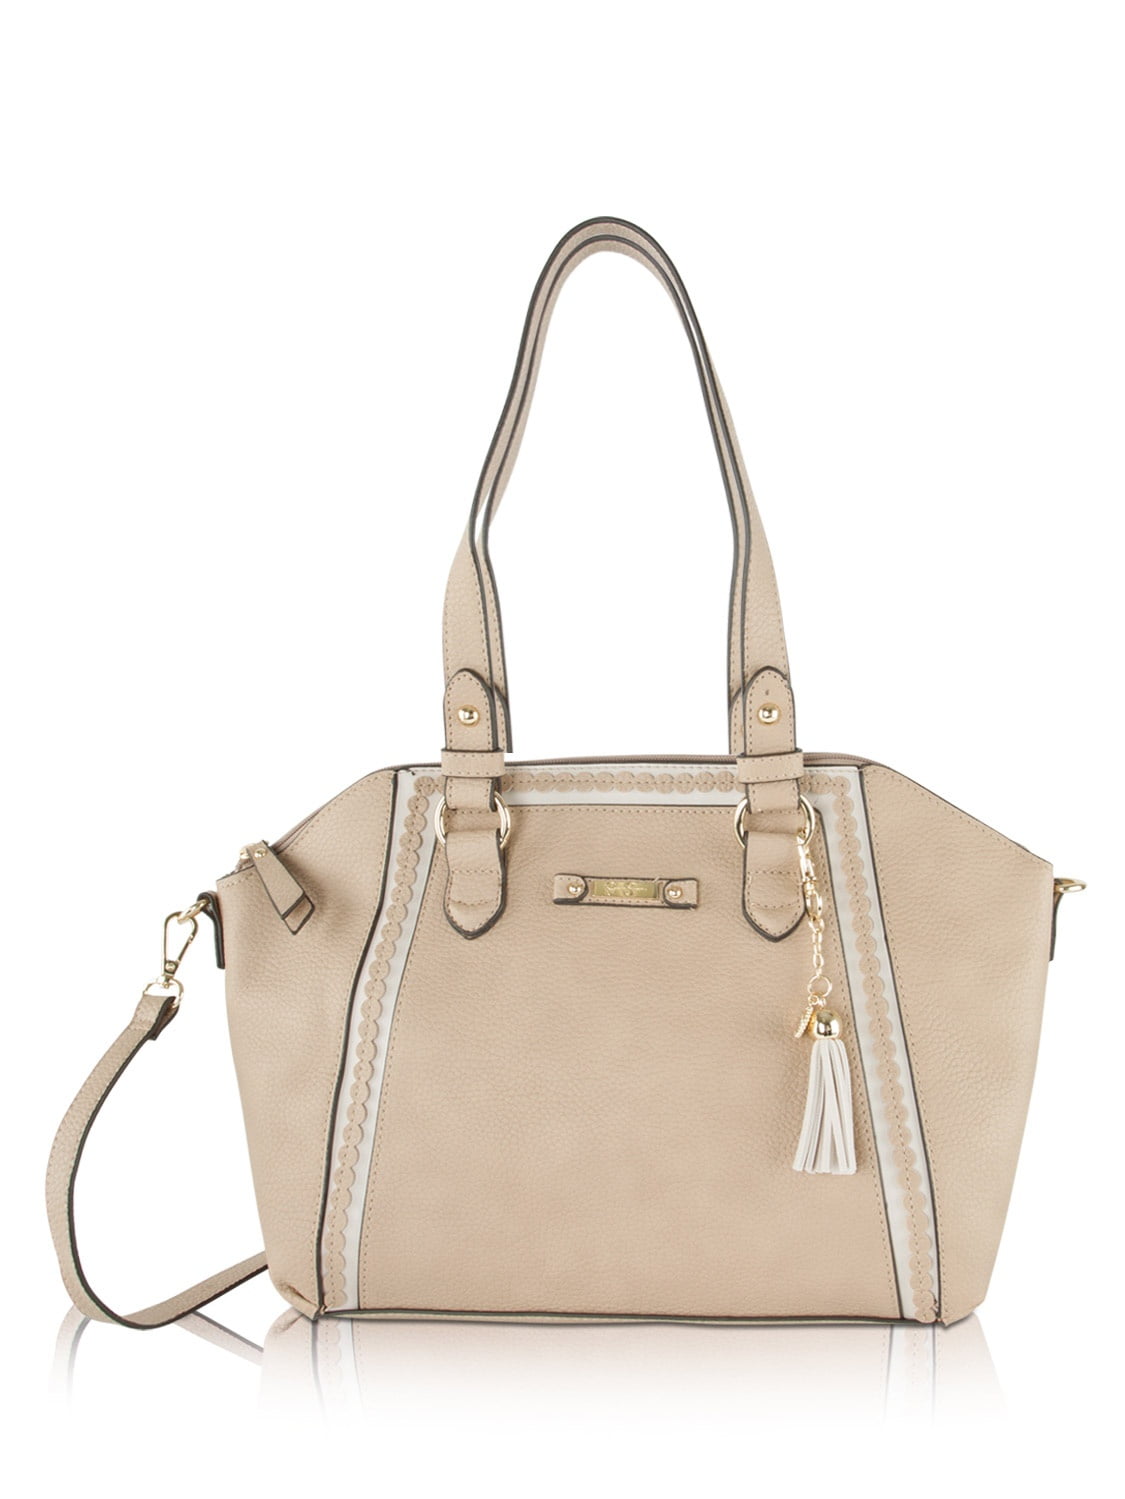 Jessica Simpson Bag Charm Shoulder Bags